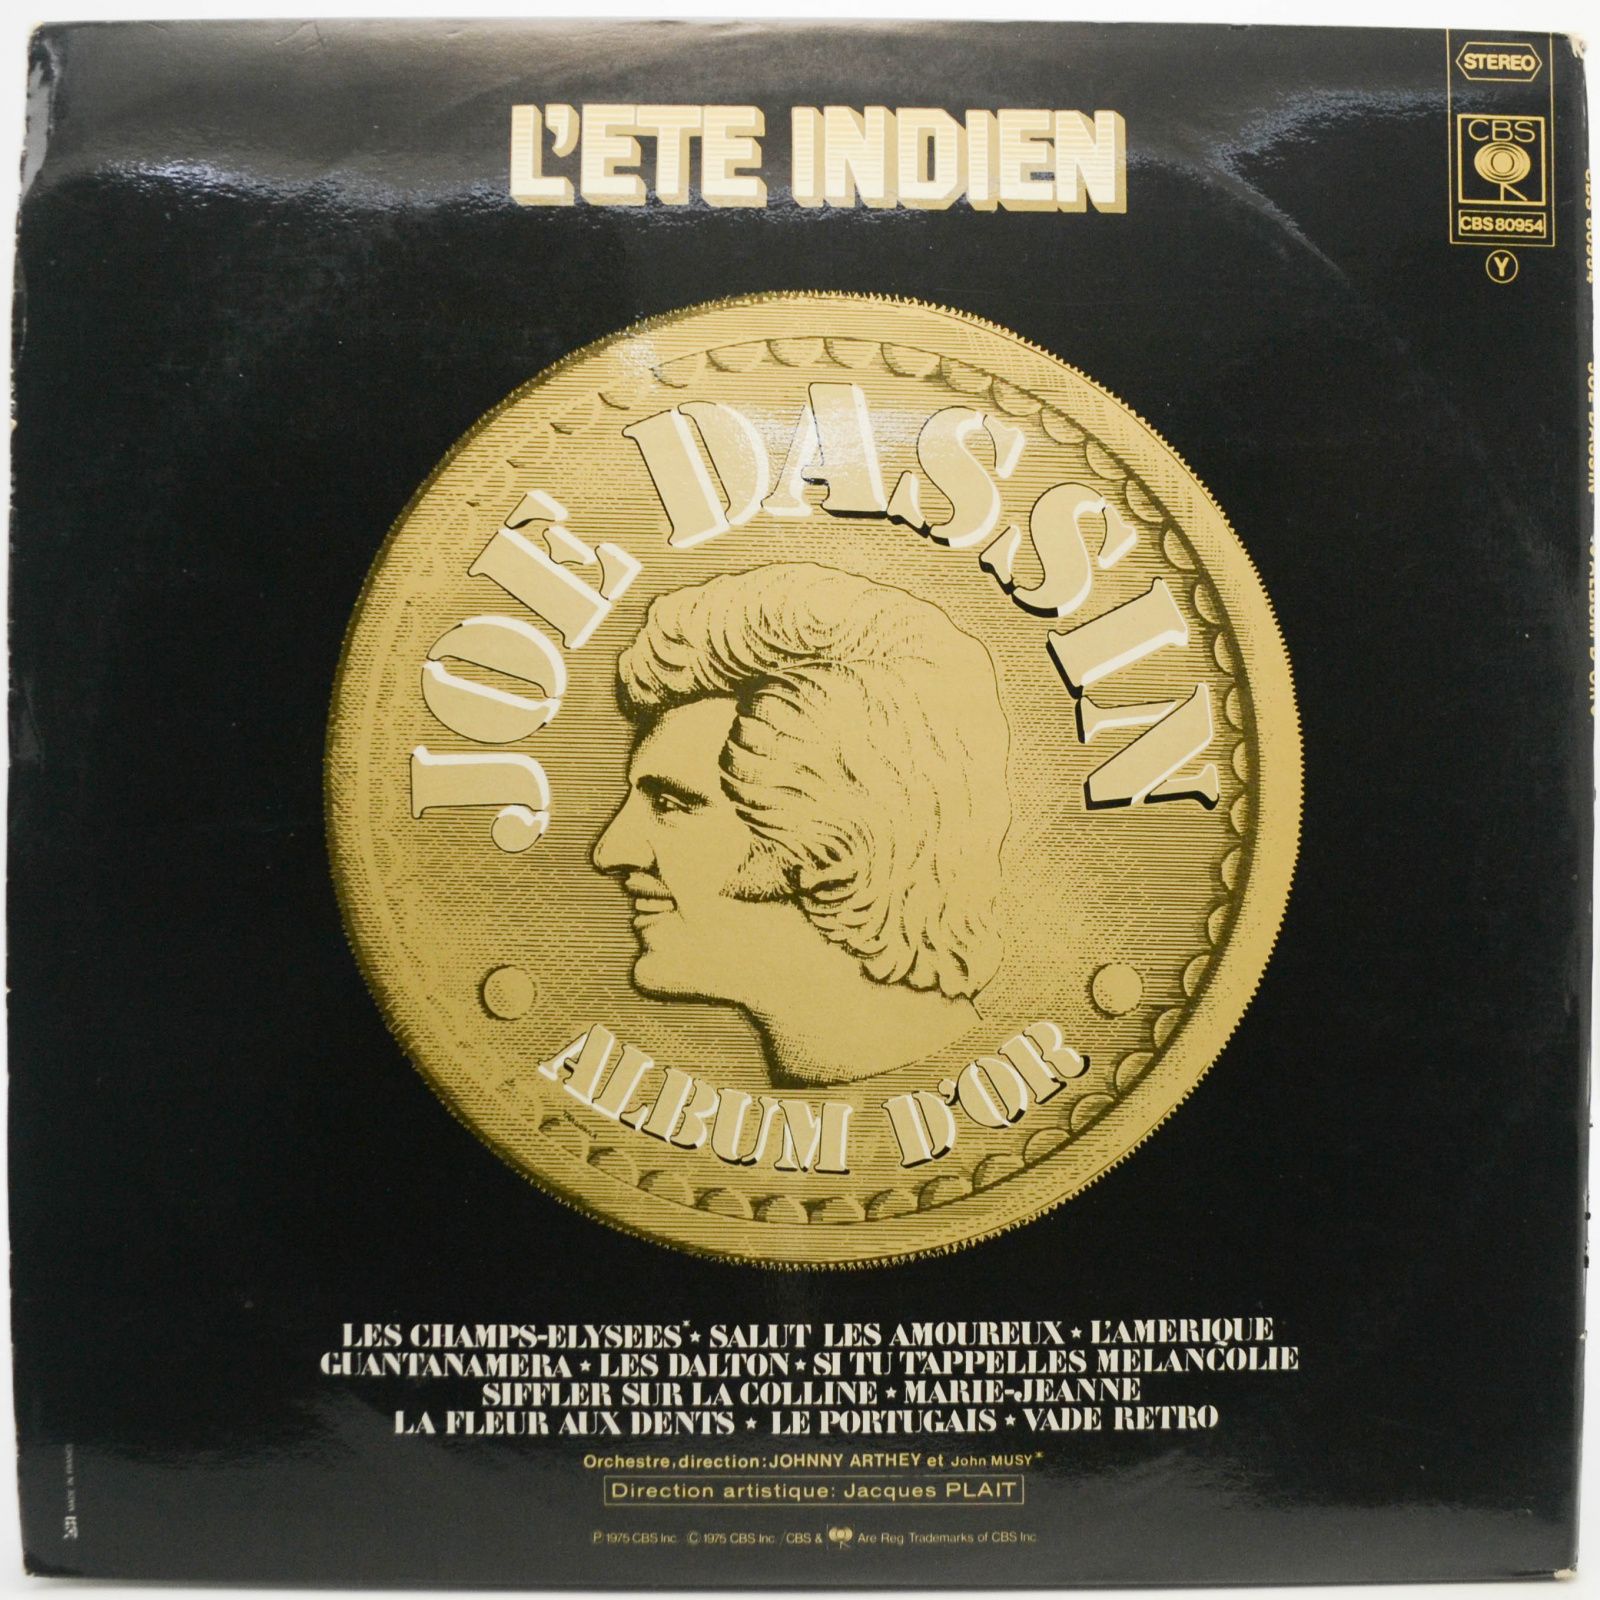 Joe Dassin — L'Eté Indien : Album D'Or (France), 1975